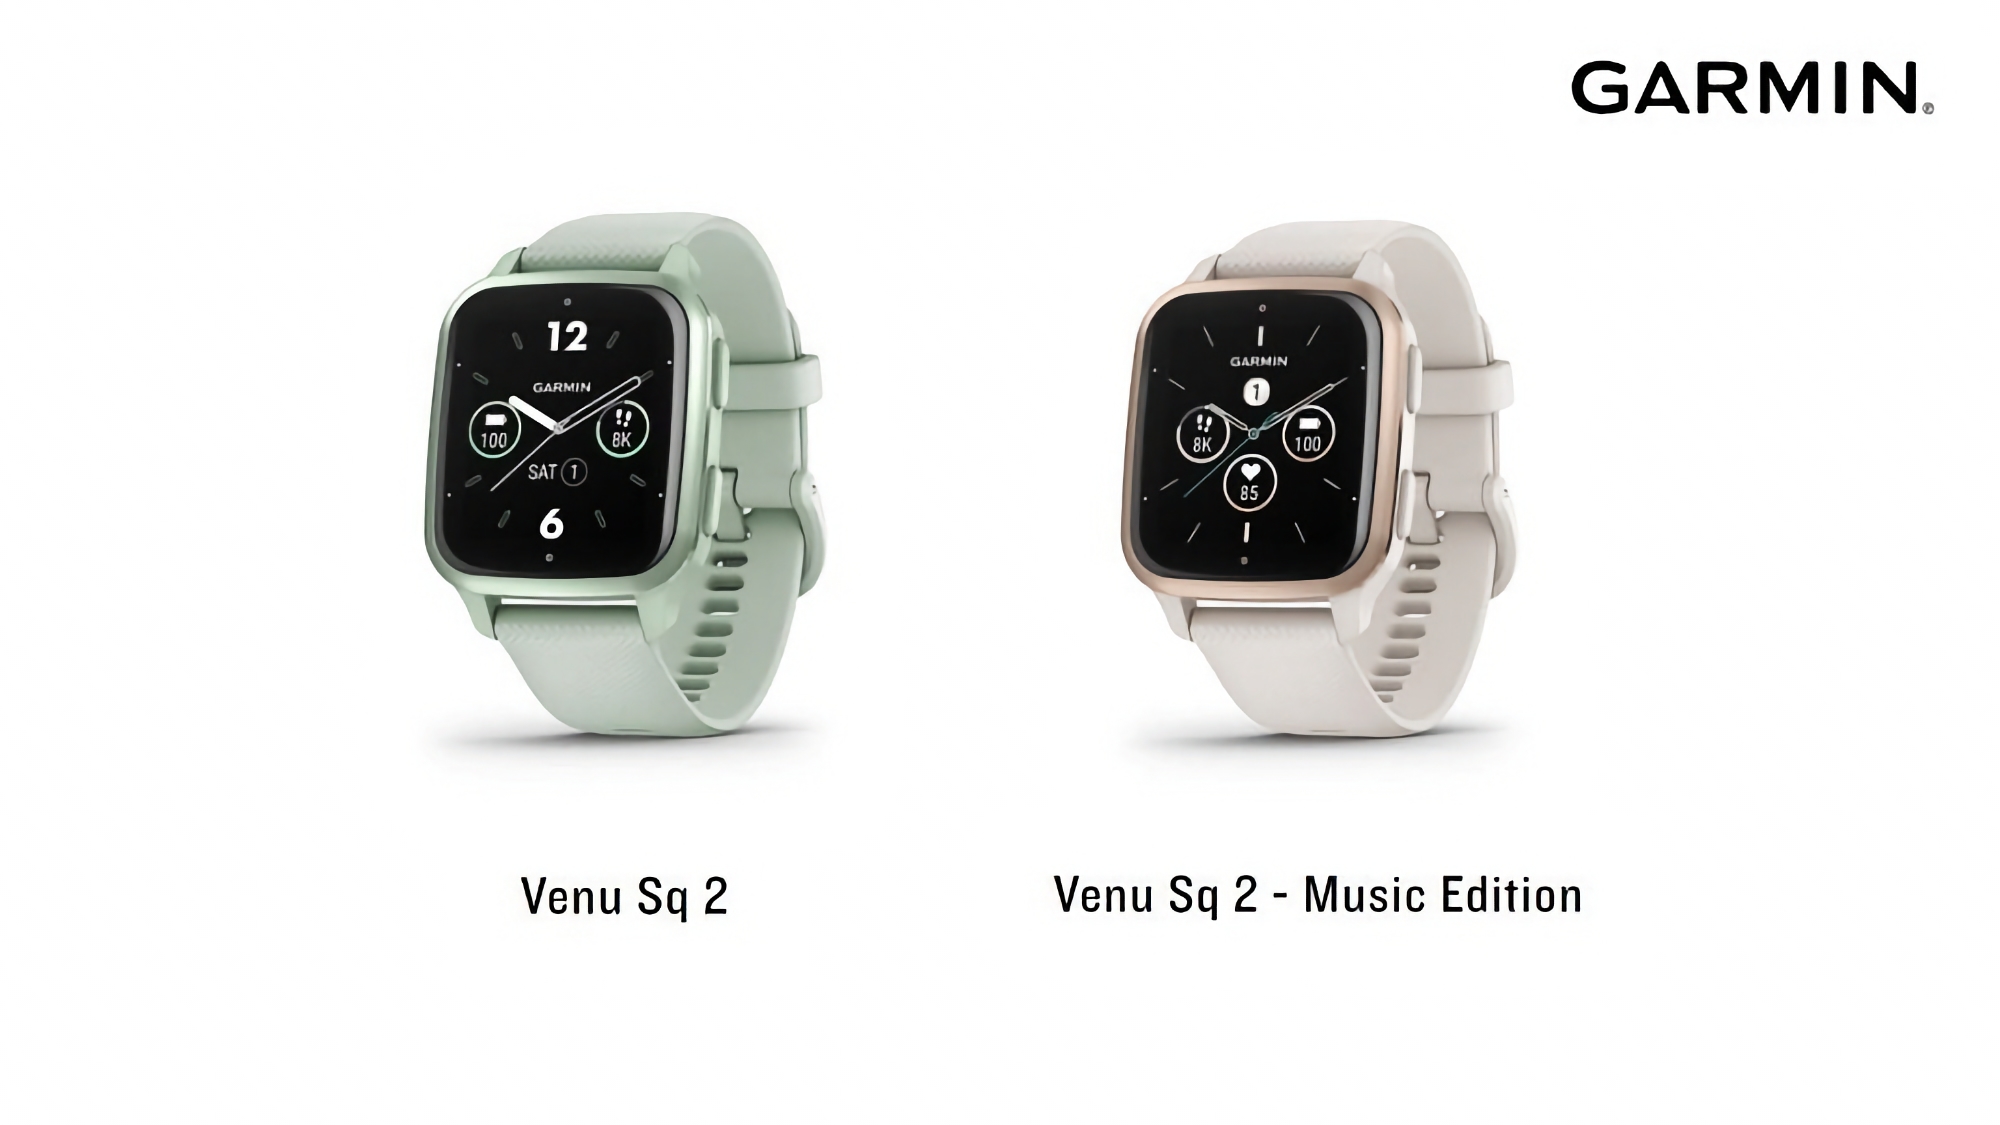 Garmin está probando un nuevo firmware para los relojes deportivos Venu Sq 2 y Venu Sq 2 Music Edition